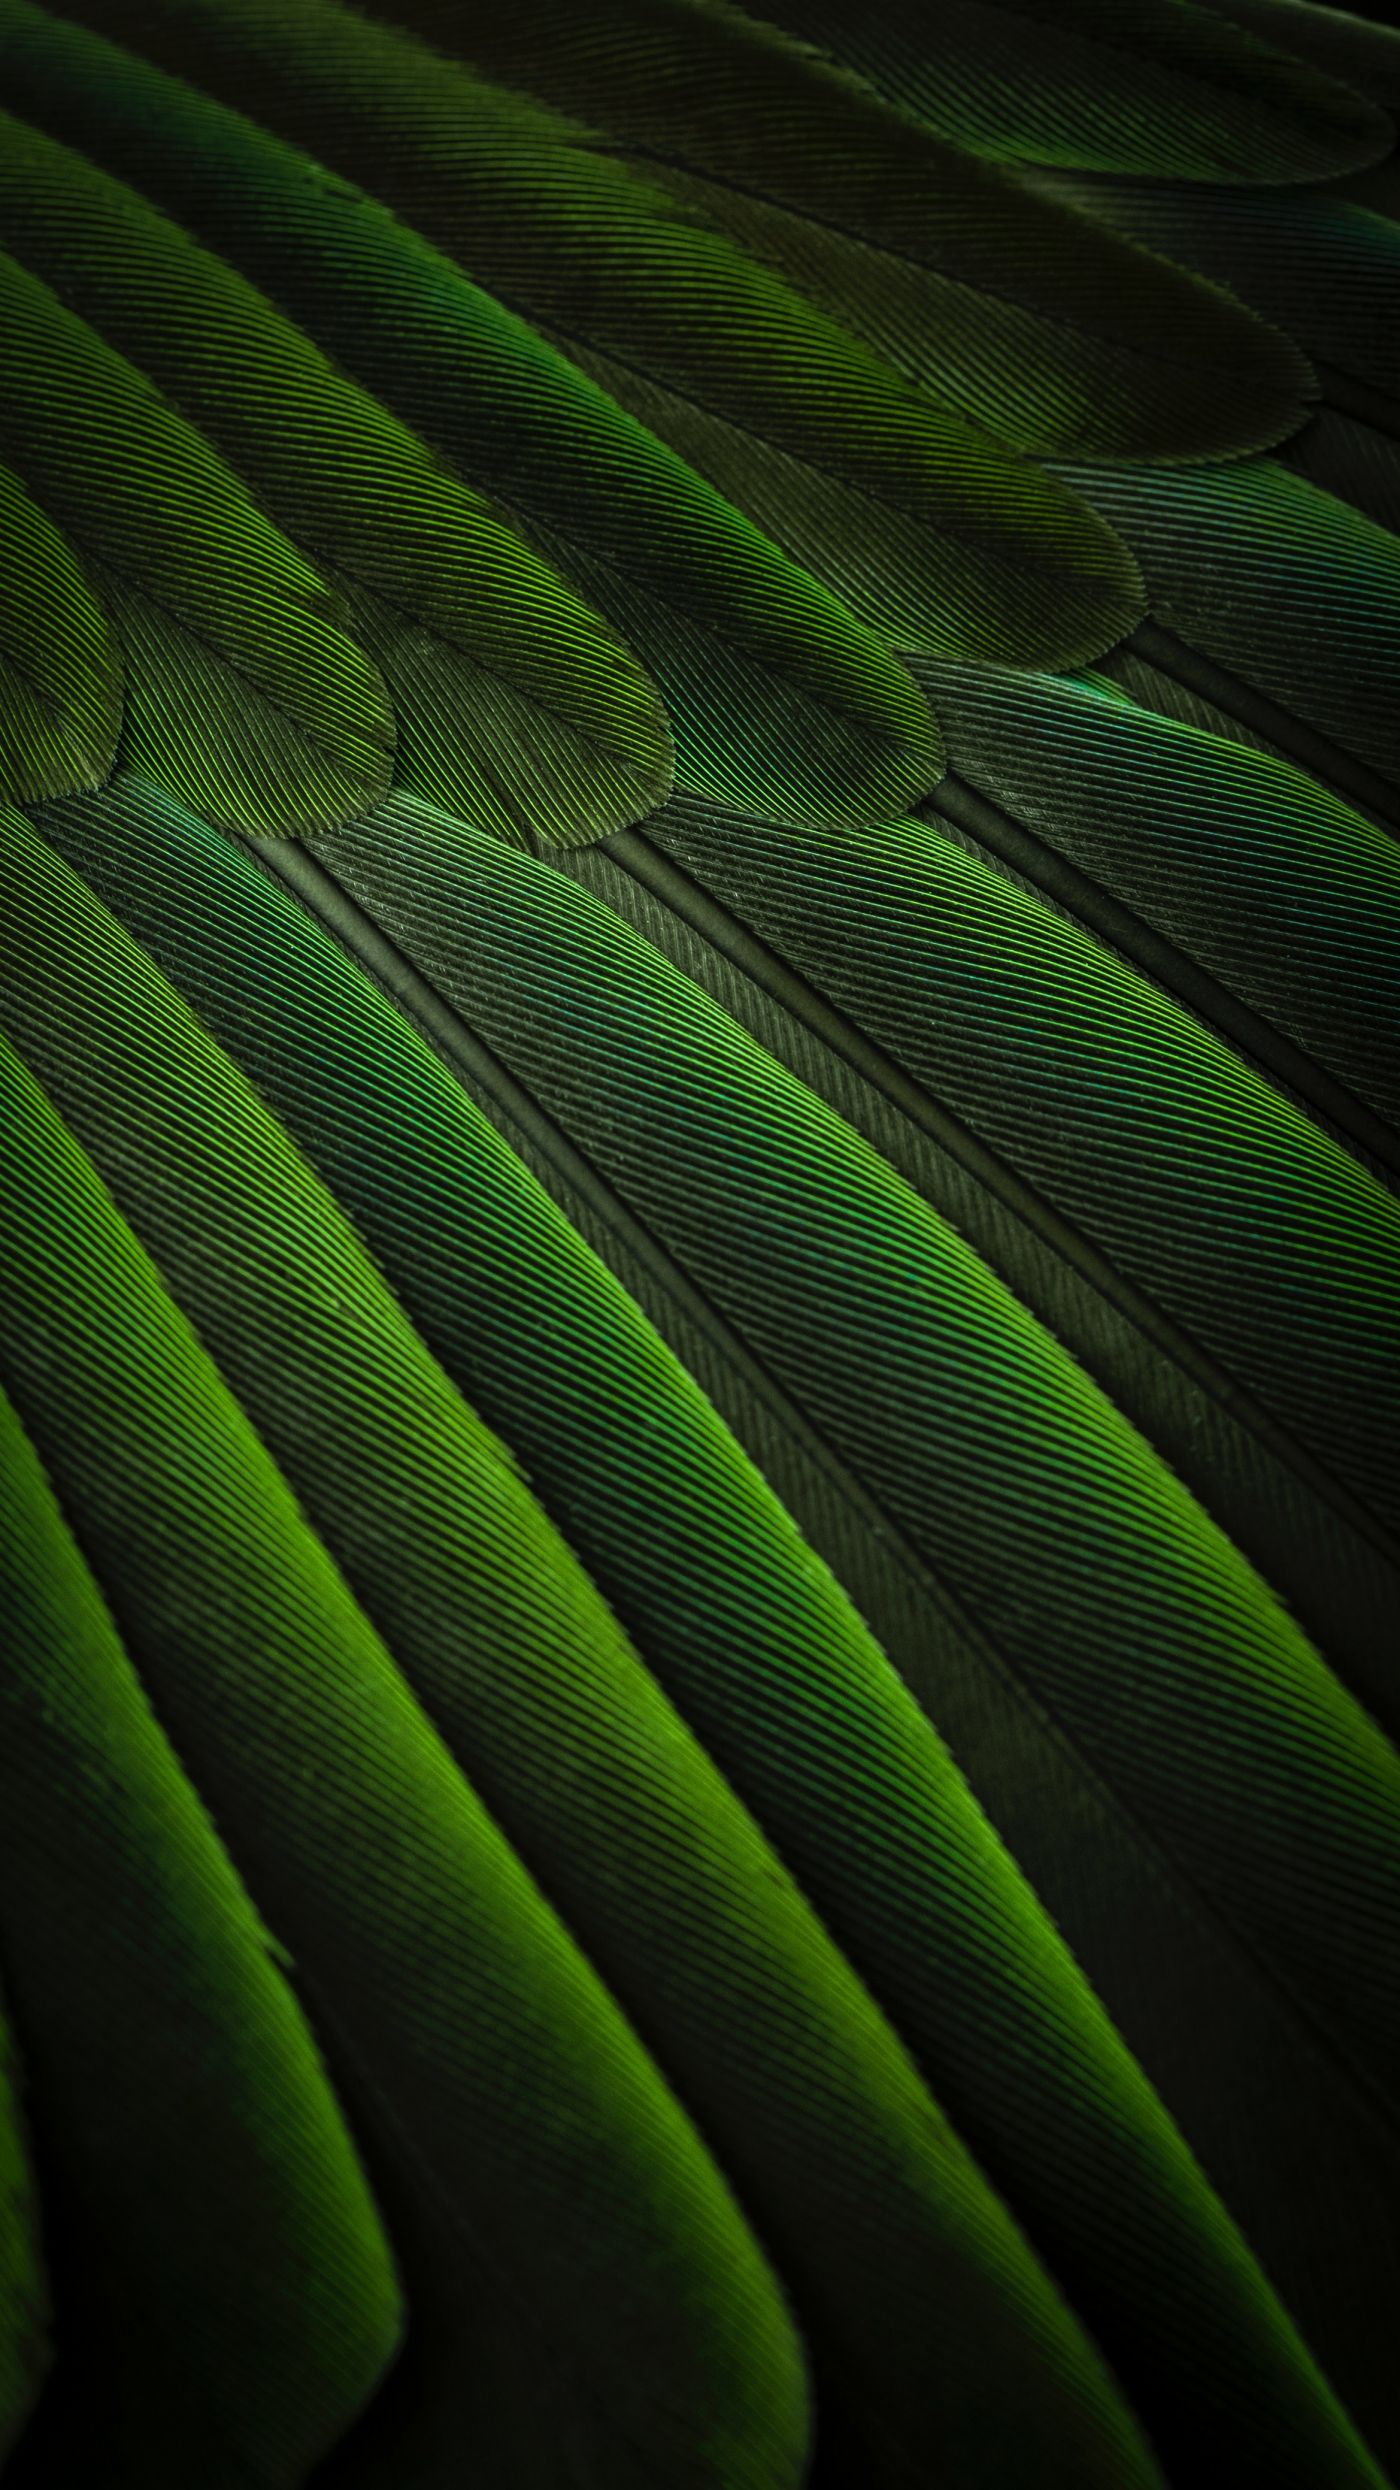 高清晰绿色孔雀羽毛壁纸 欧莱凯设计网